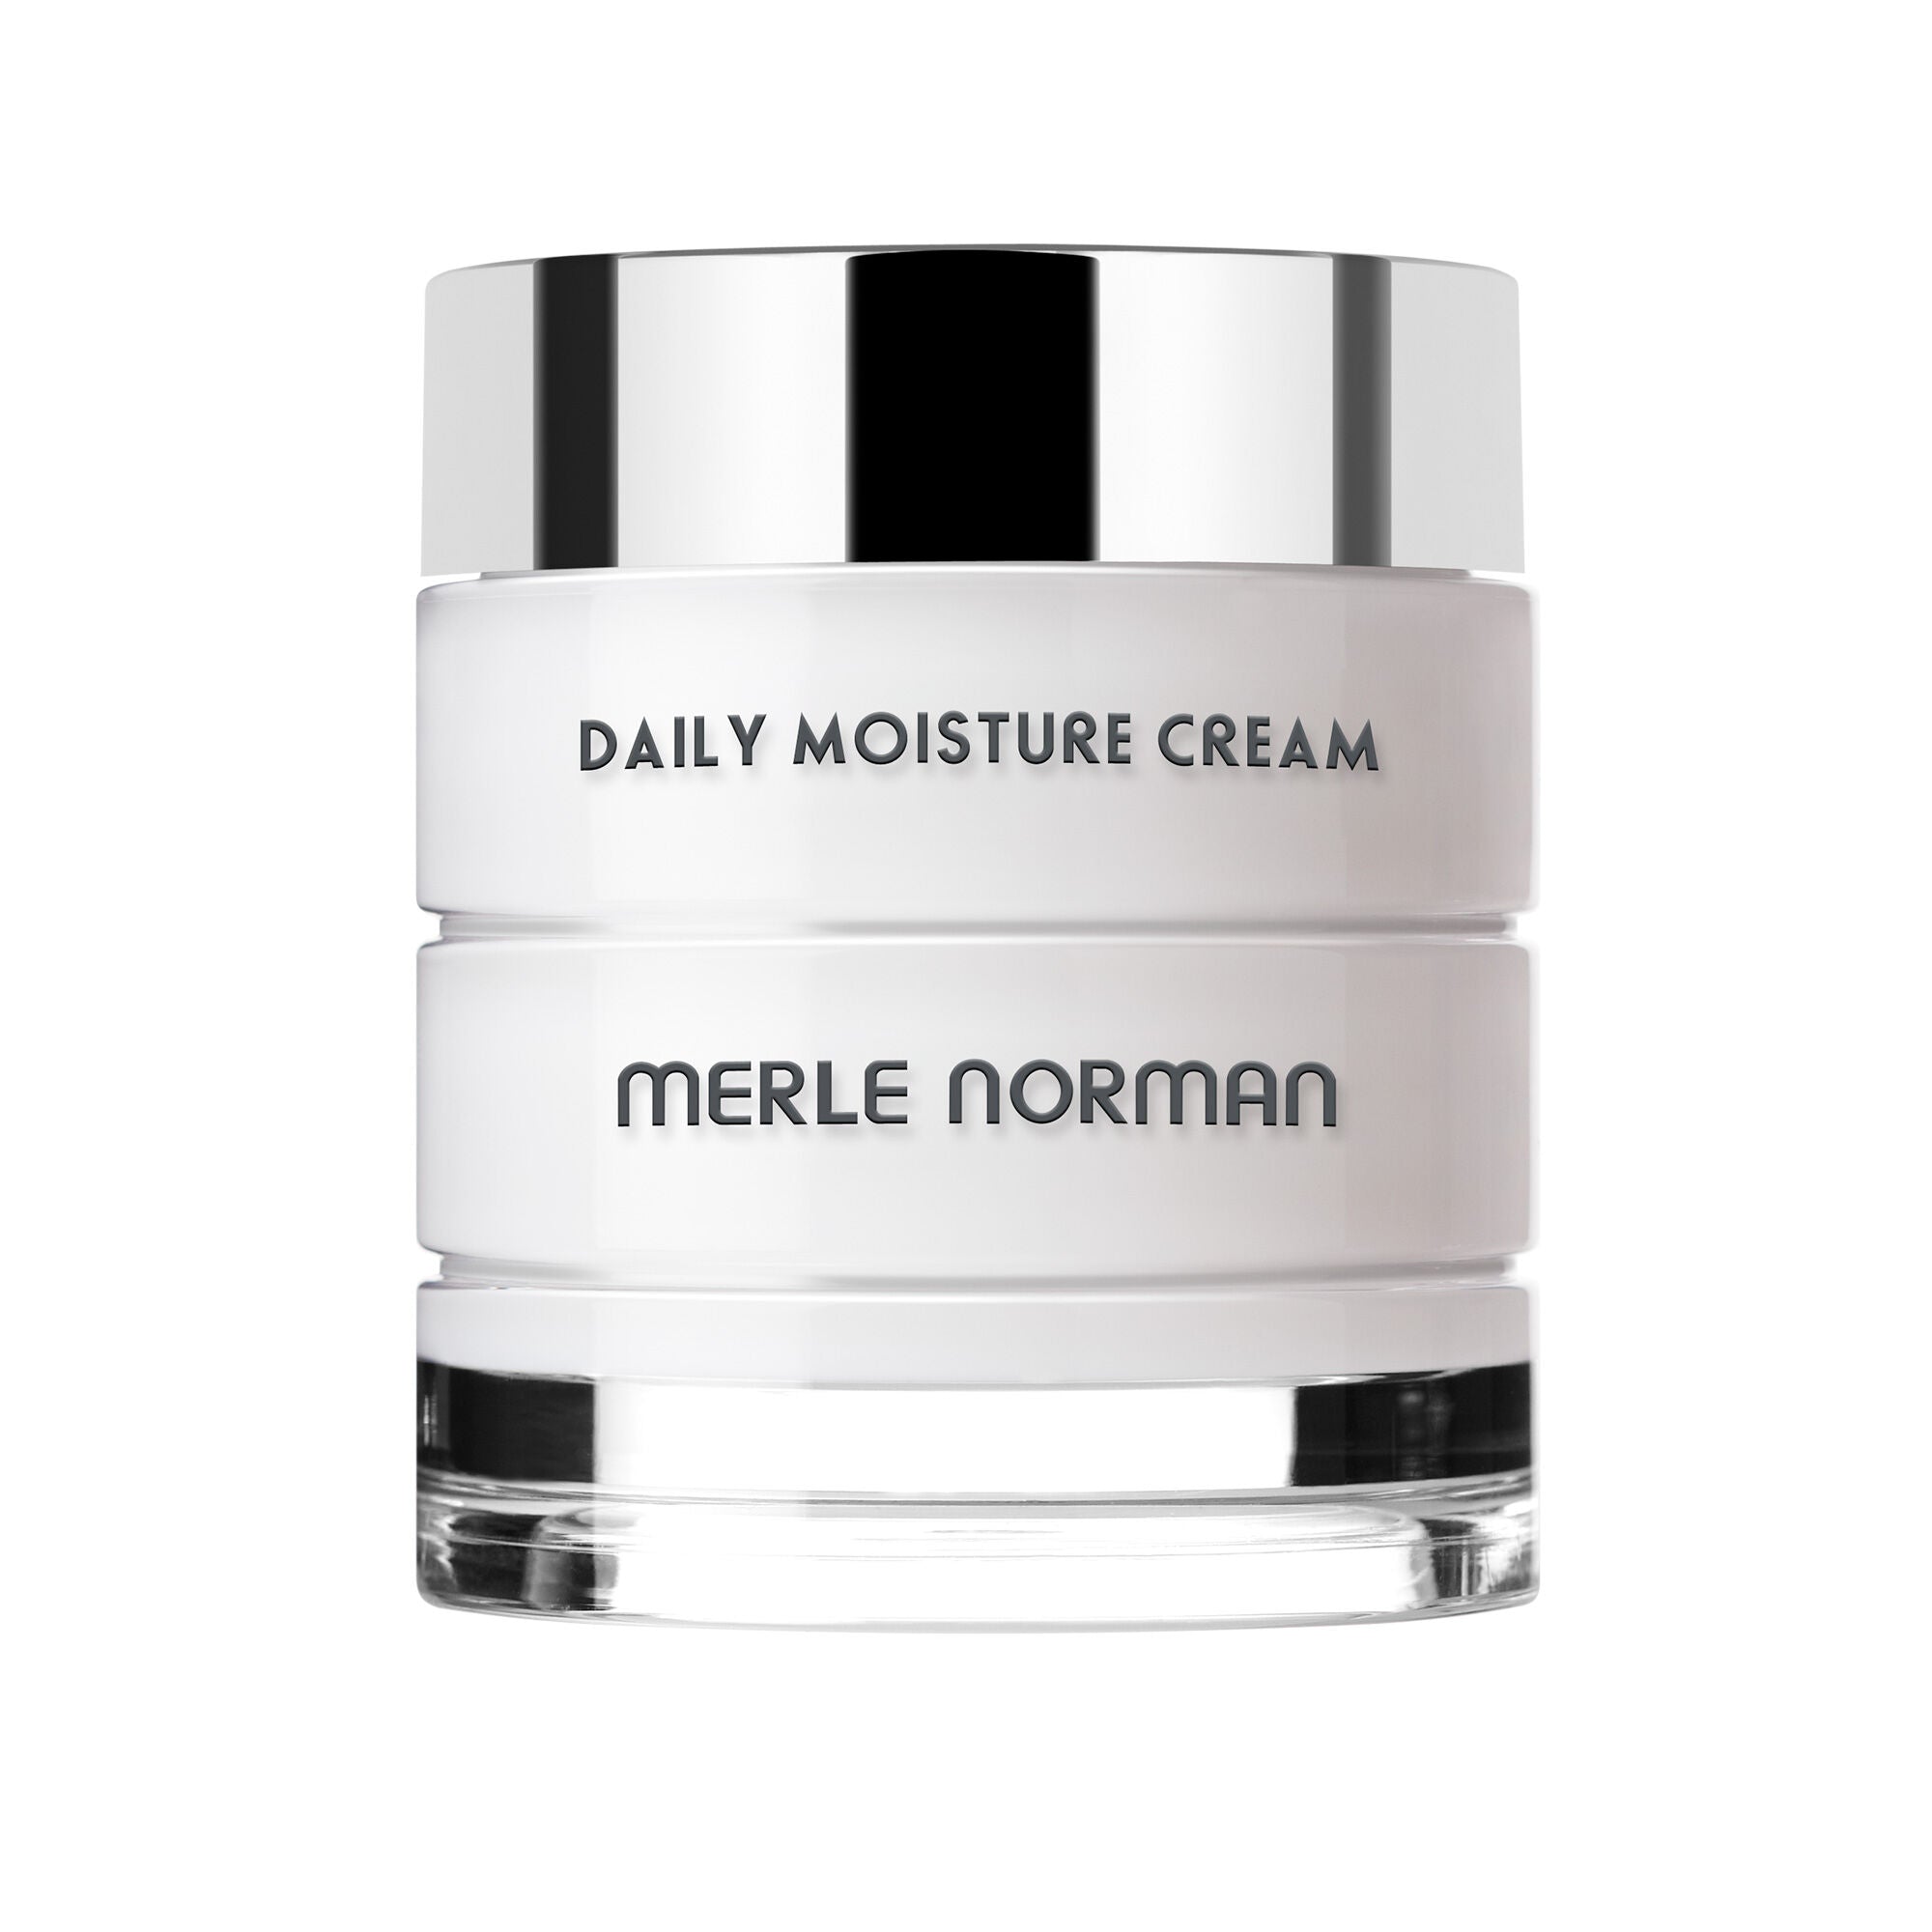 Daily Moisture Cream